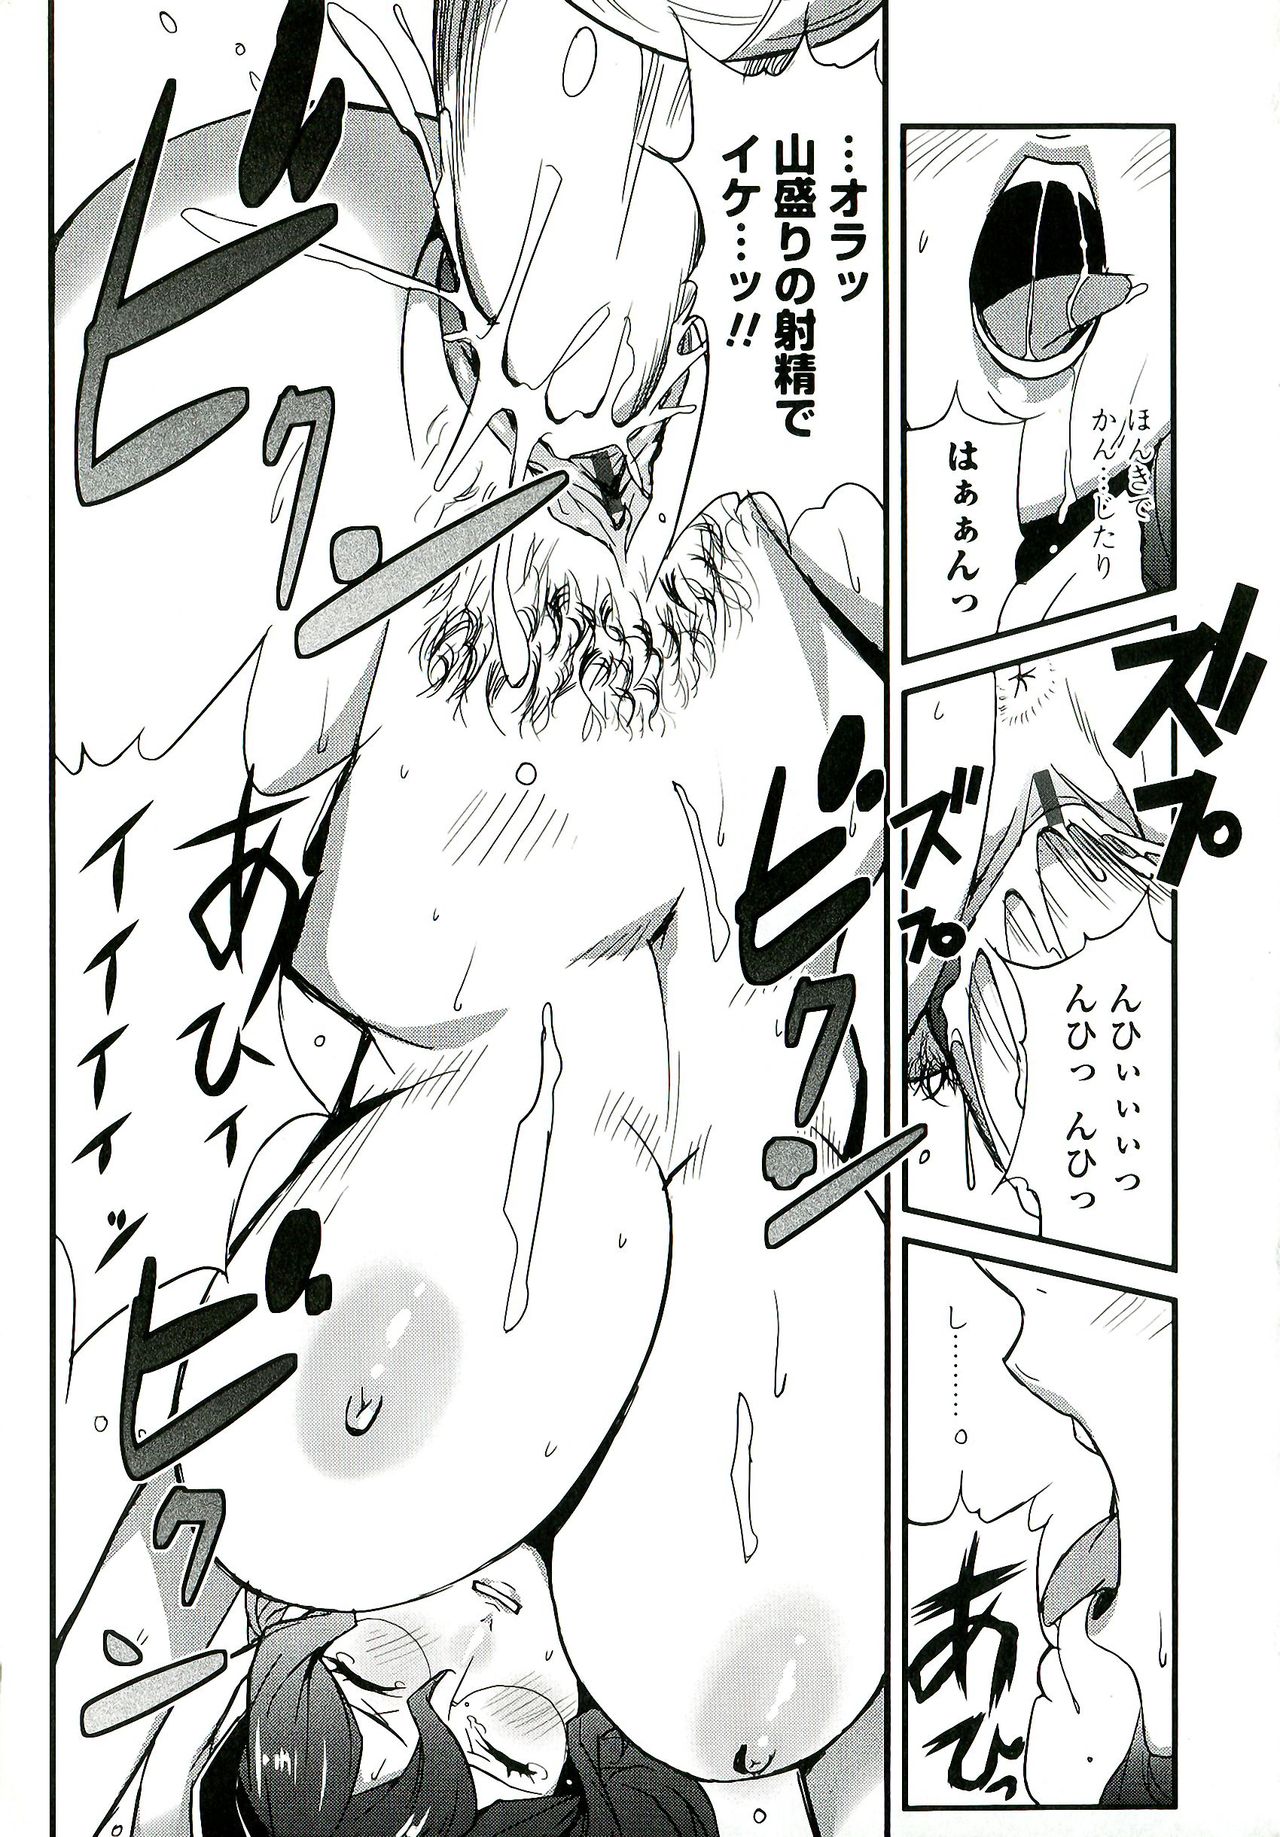 [Miura Takehiro] Nudism Zone [みうらたけひろ] Nudism Zone